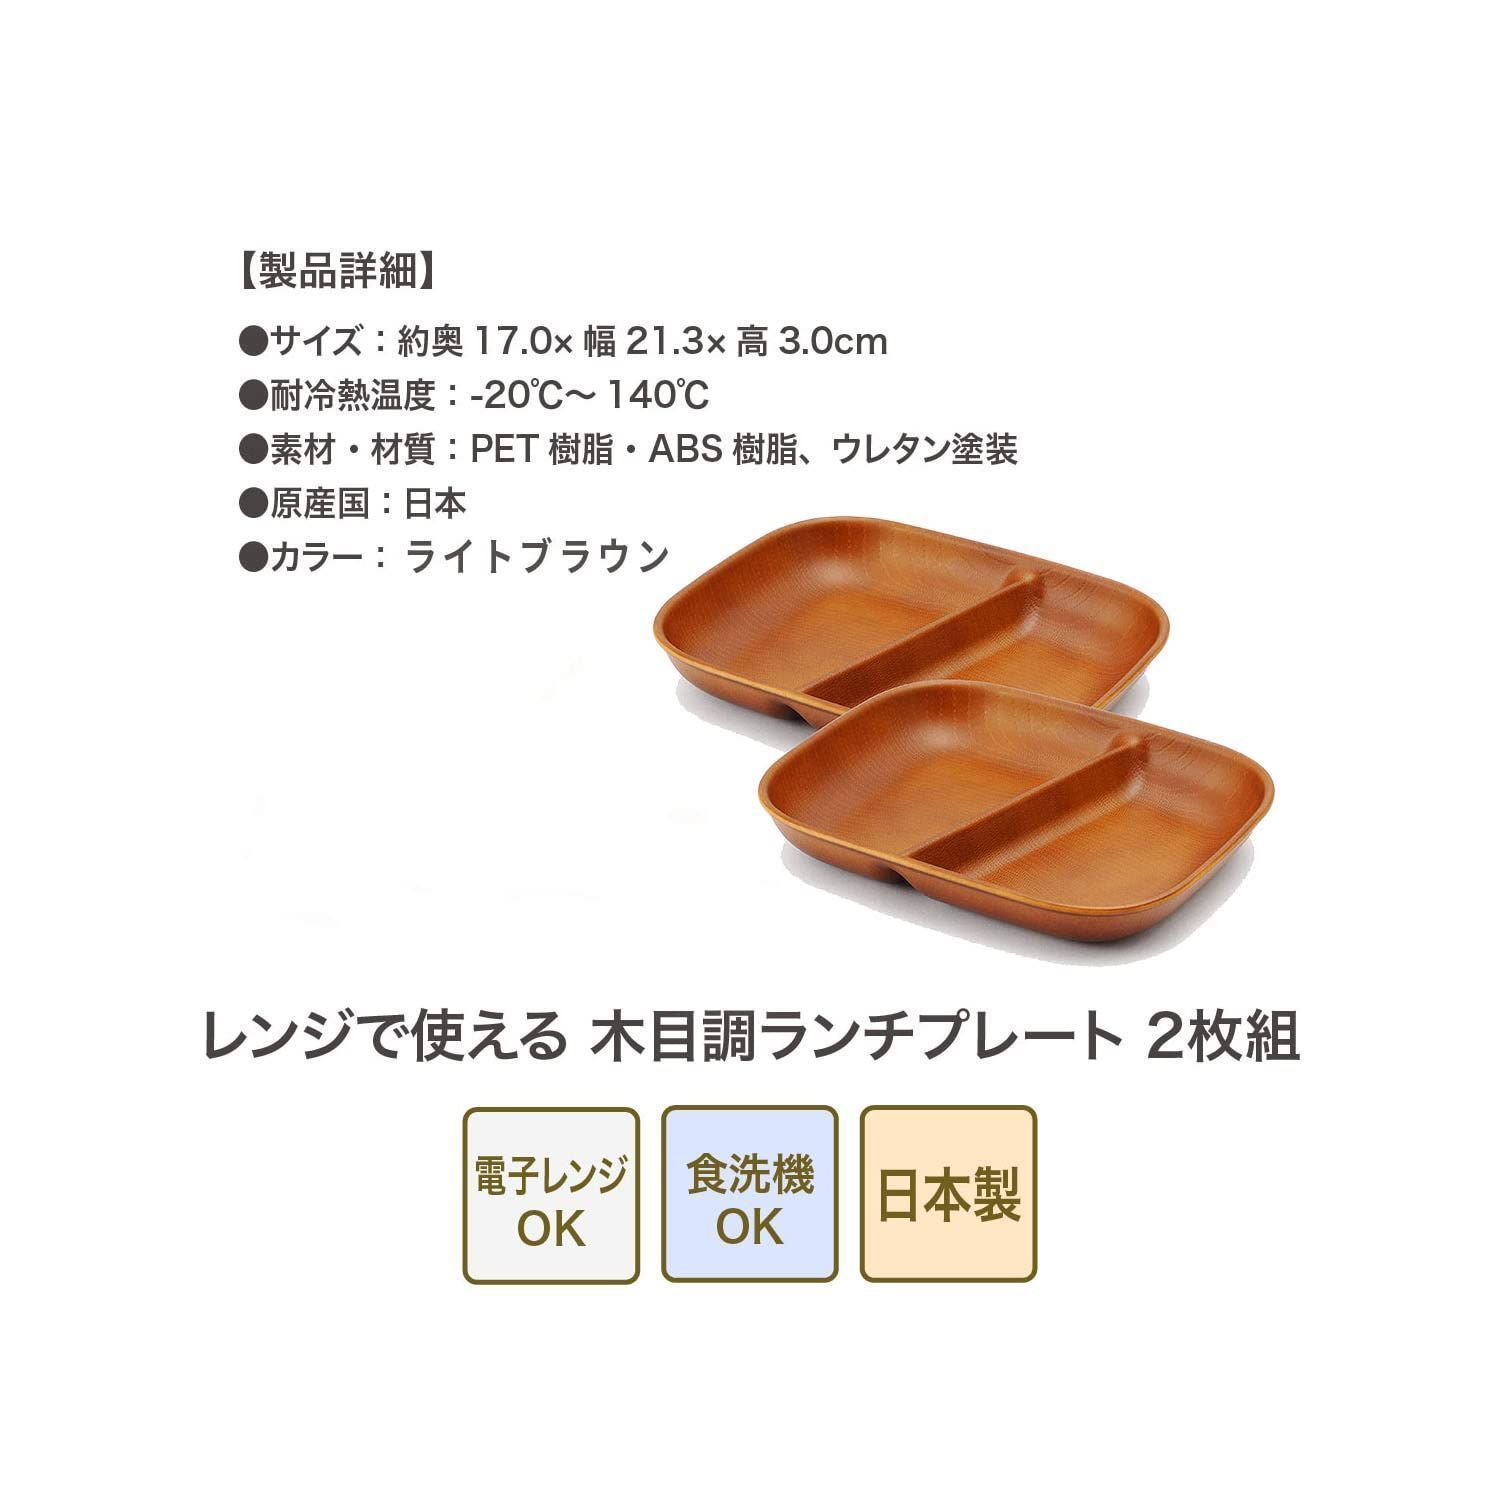 大人気】正和(Showa)レンジで使える木目調ランチプレート (ライトブラウン・2枚組) - メルカリ